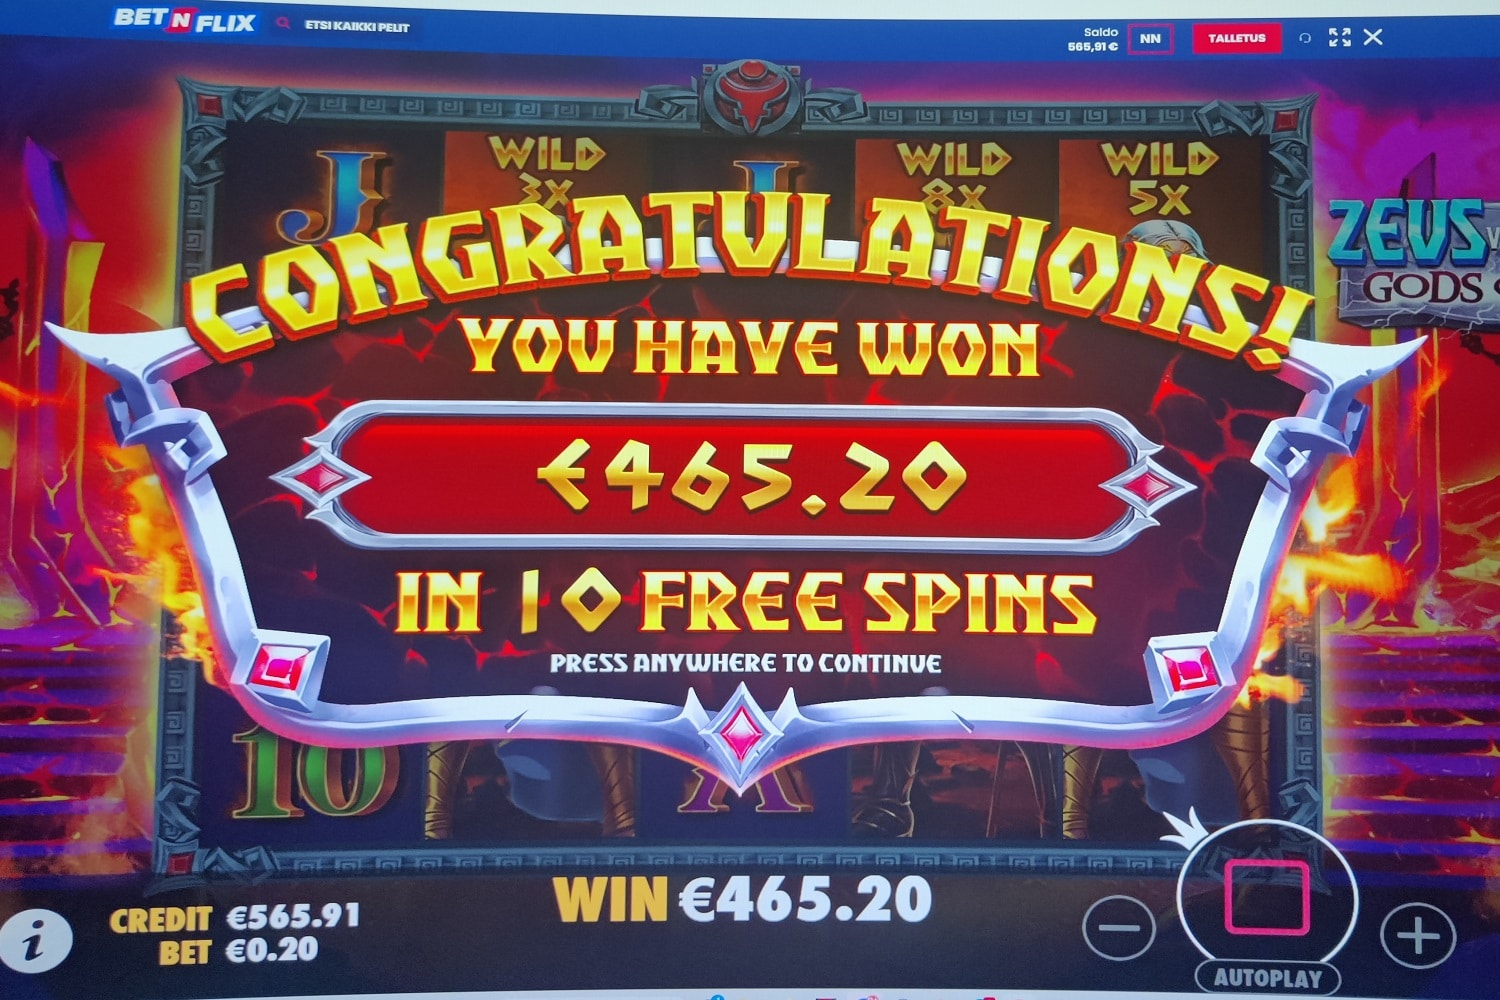 Zeus Vs Hades Gods of War Casino win picture by Nudex 465.2€ 2326x 31.8.2023 Bet n Flix